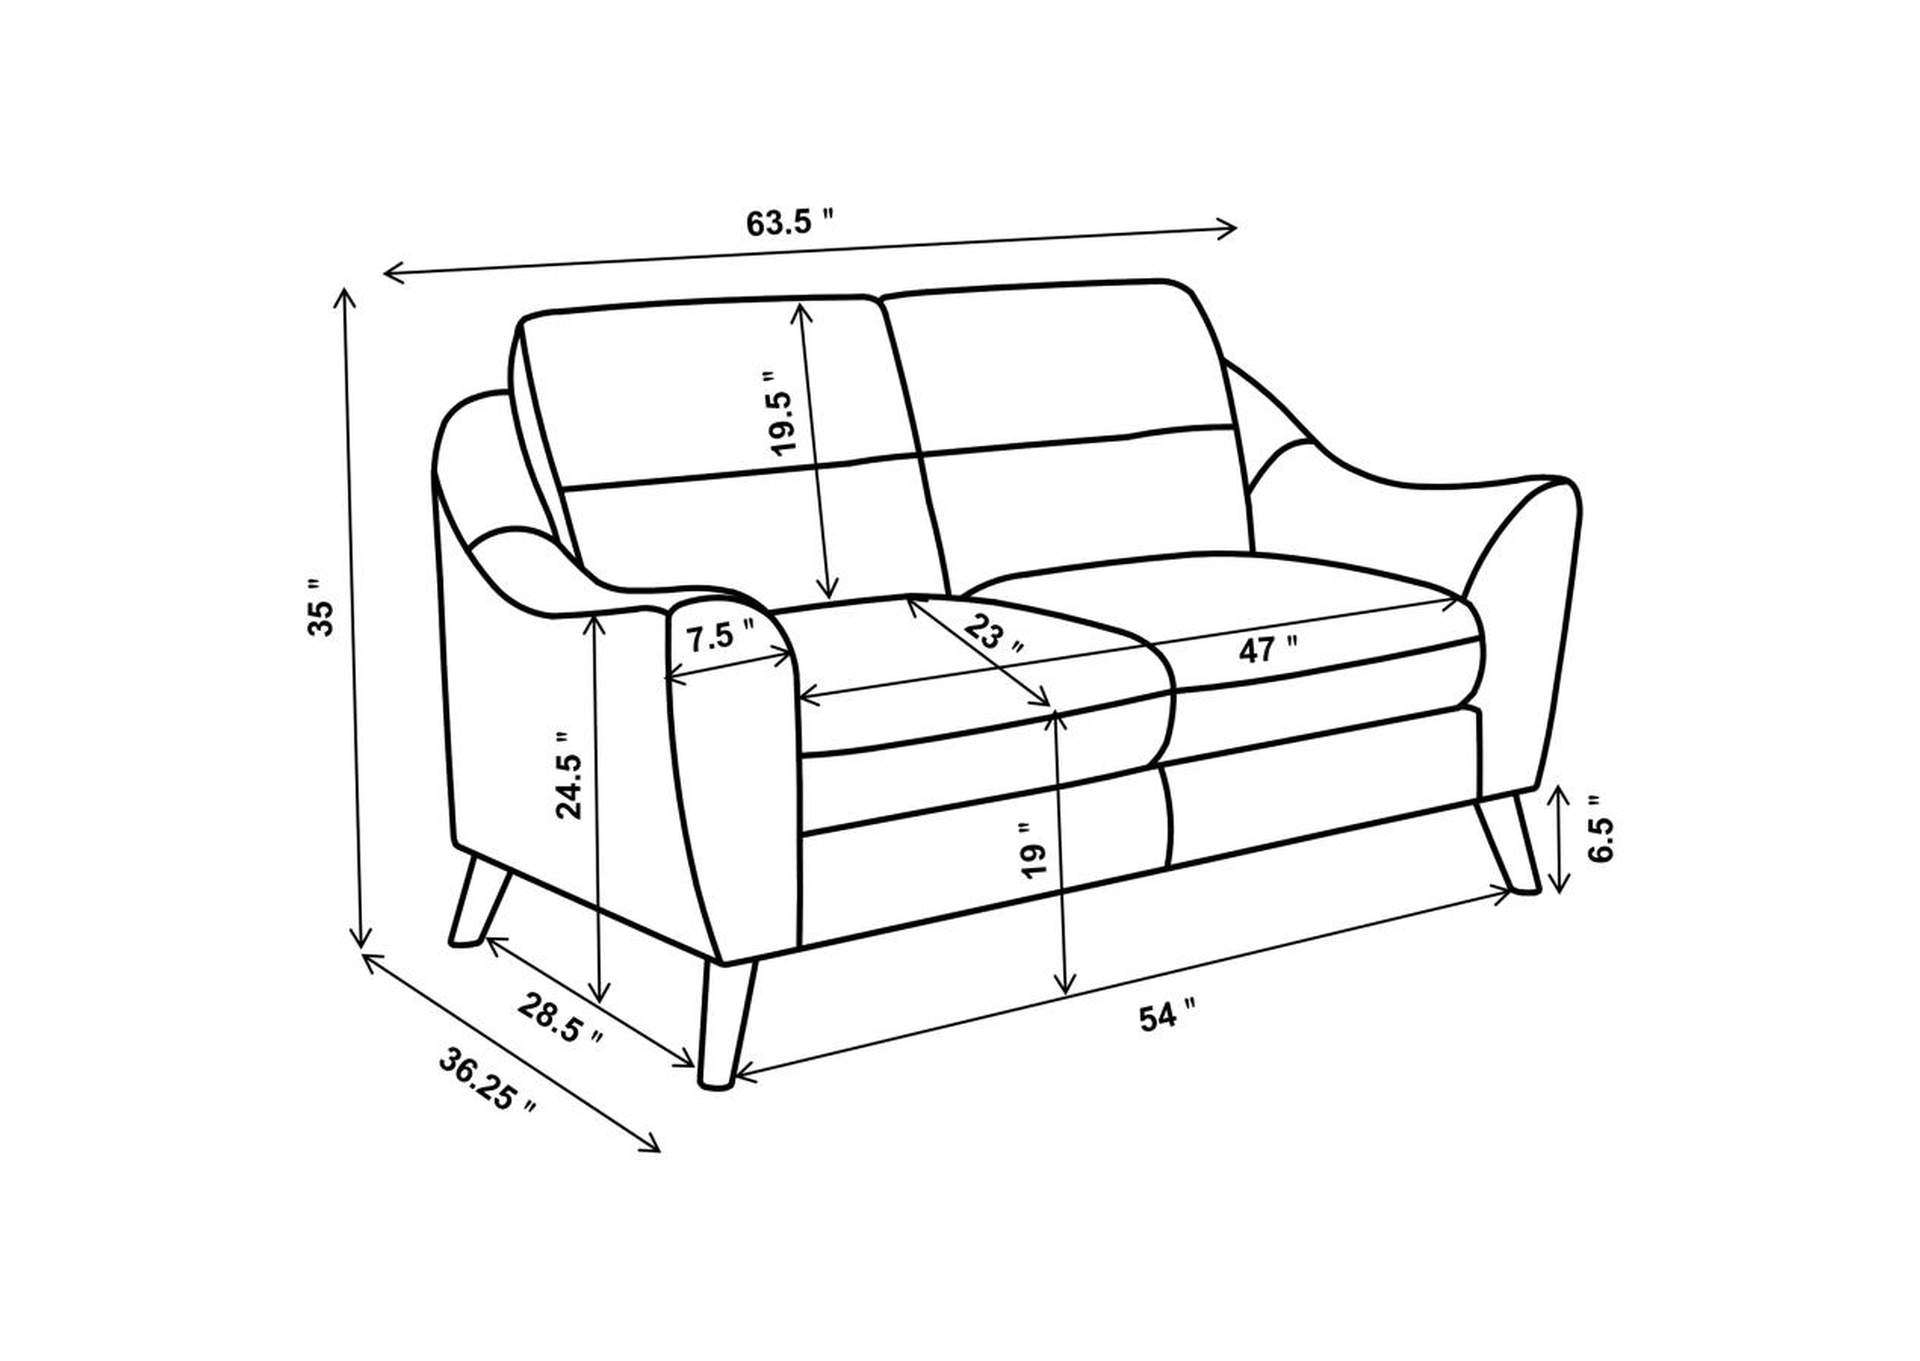 Gano 3 - piece Sloped Arm Living Room Set Navy Blue,Coaster Furniture